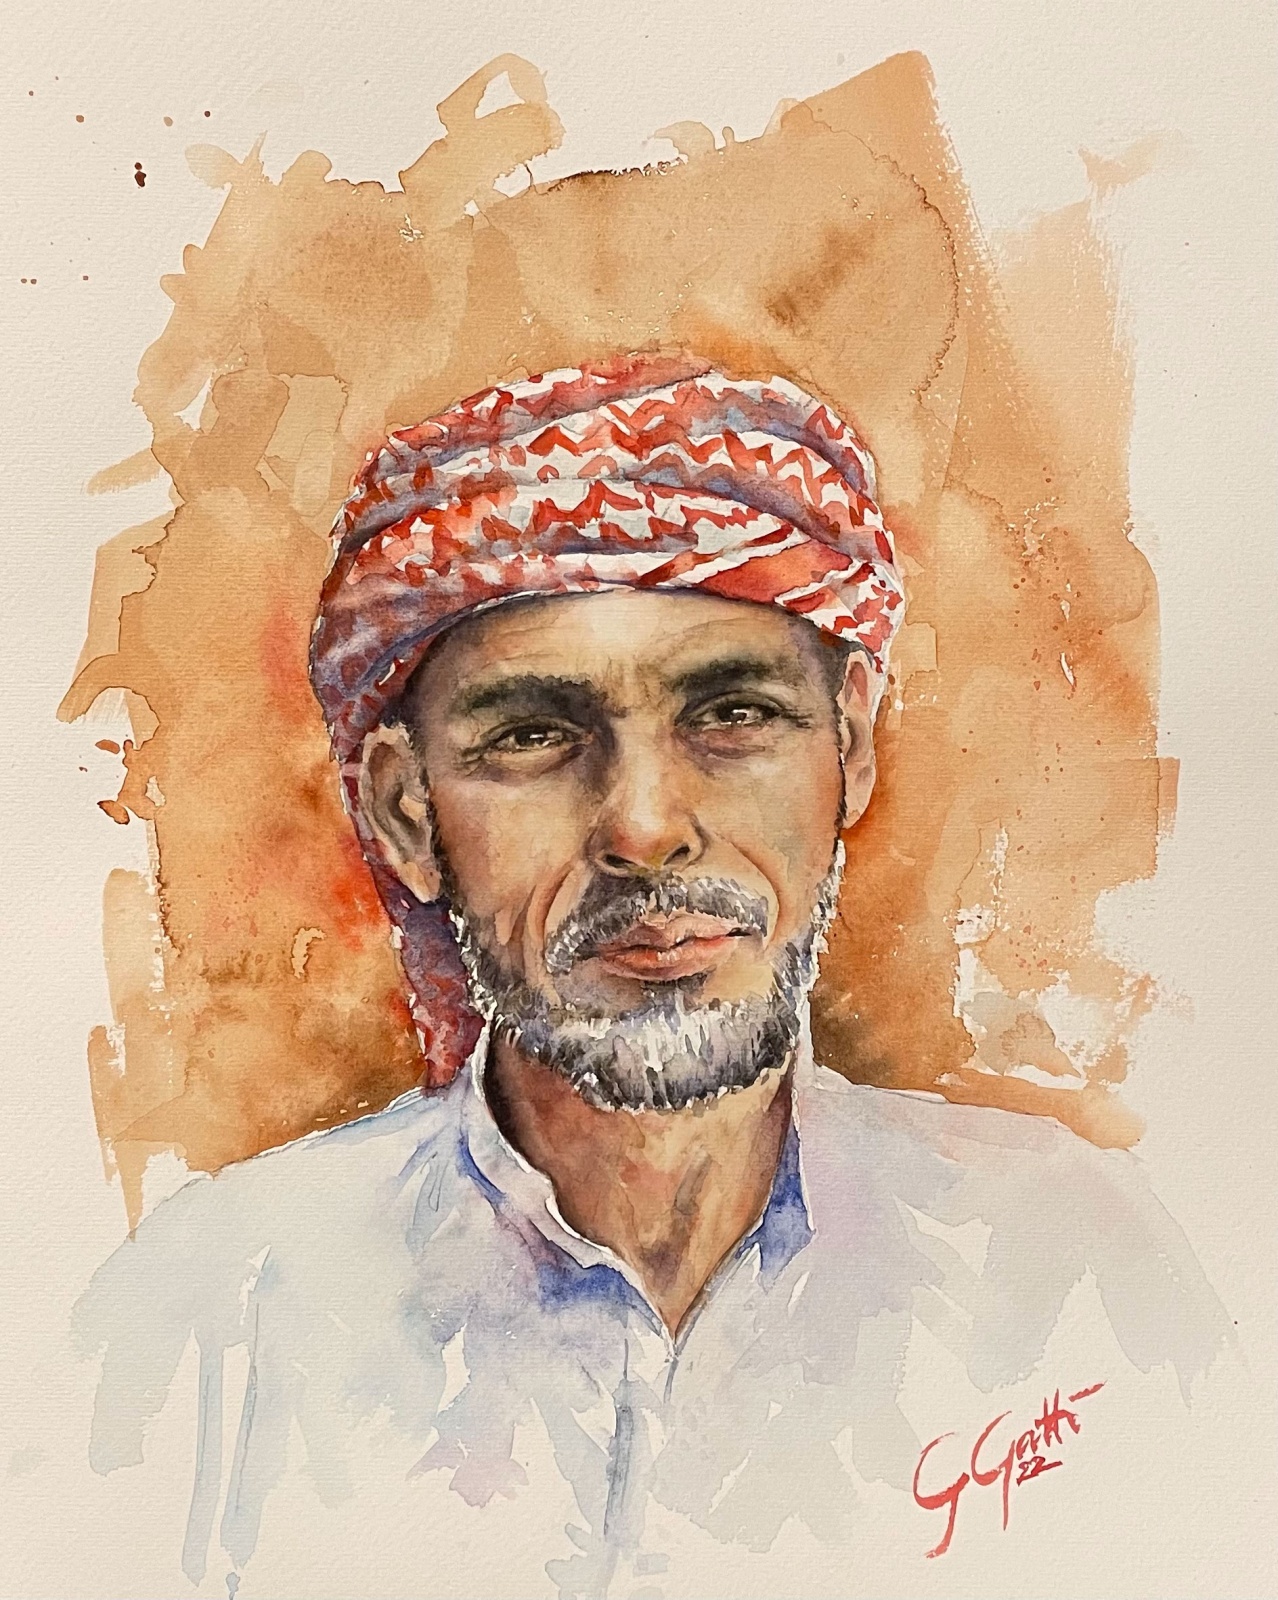 Ritratto arabo - watercolour on hand-made paper - Monza in Acquarello 2022
40x30 cm